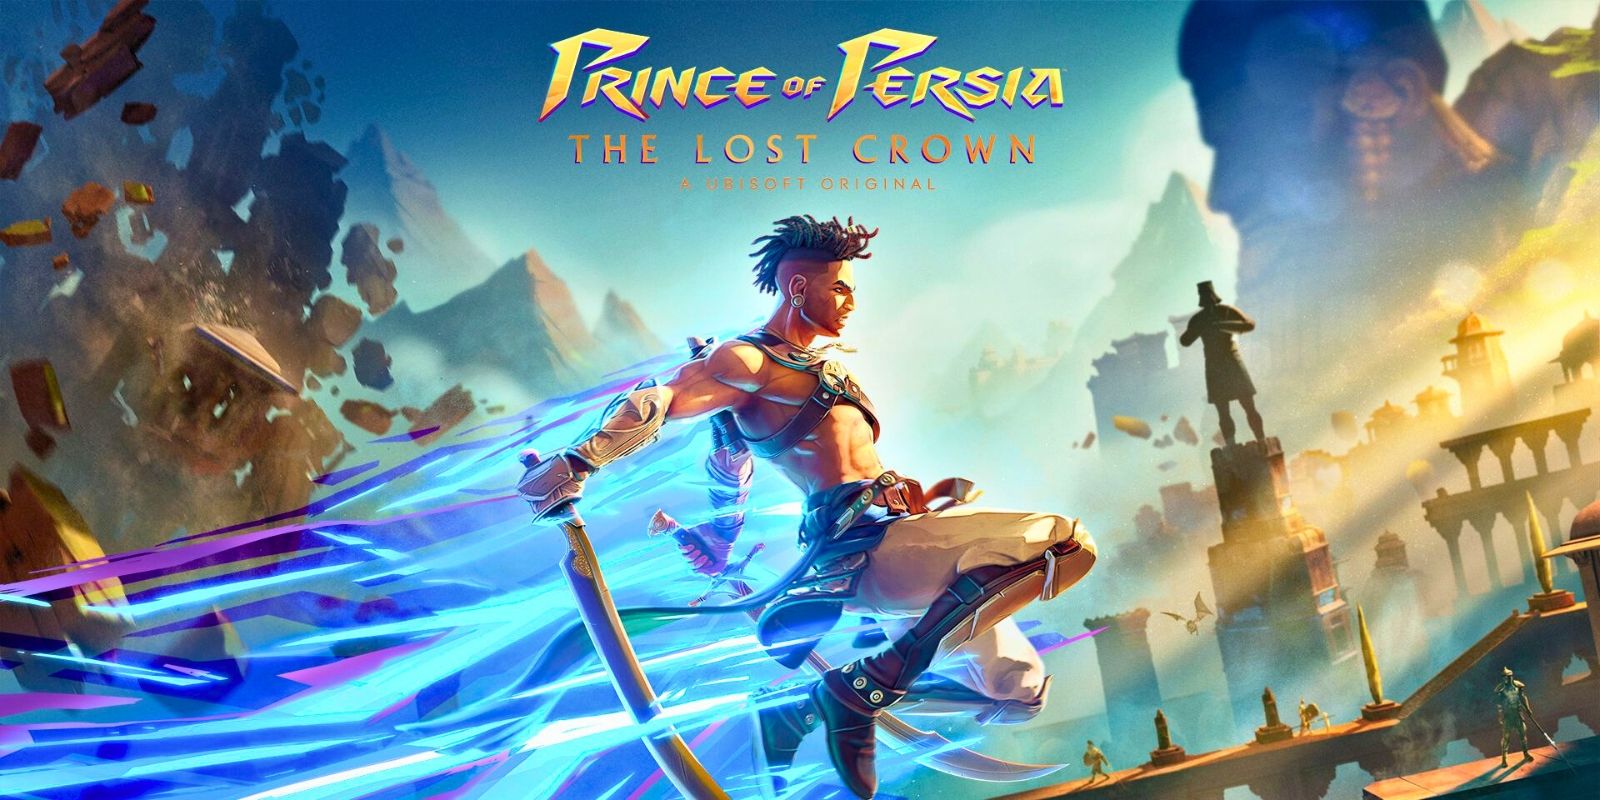 Prince of Persia: The Lost Crown Review: “Una historia decepcionante redimida por un combate fascinante”